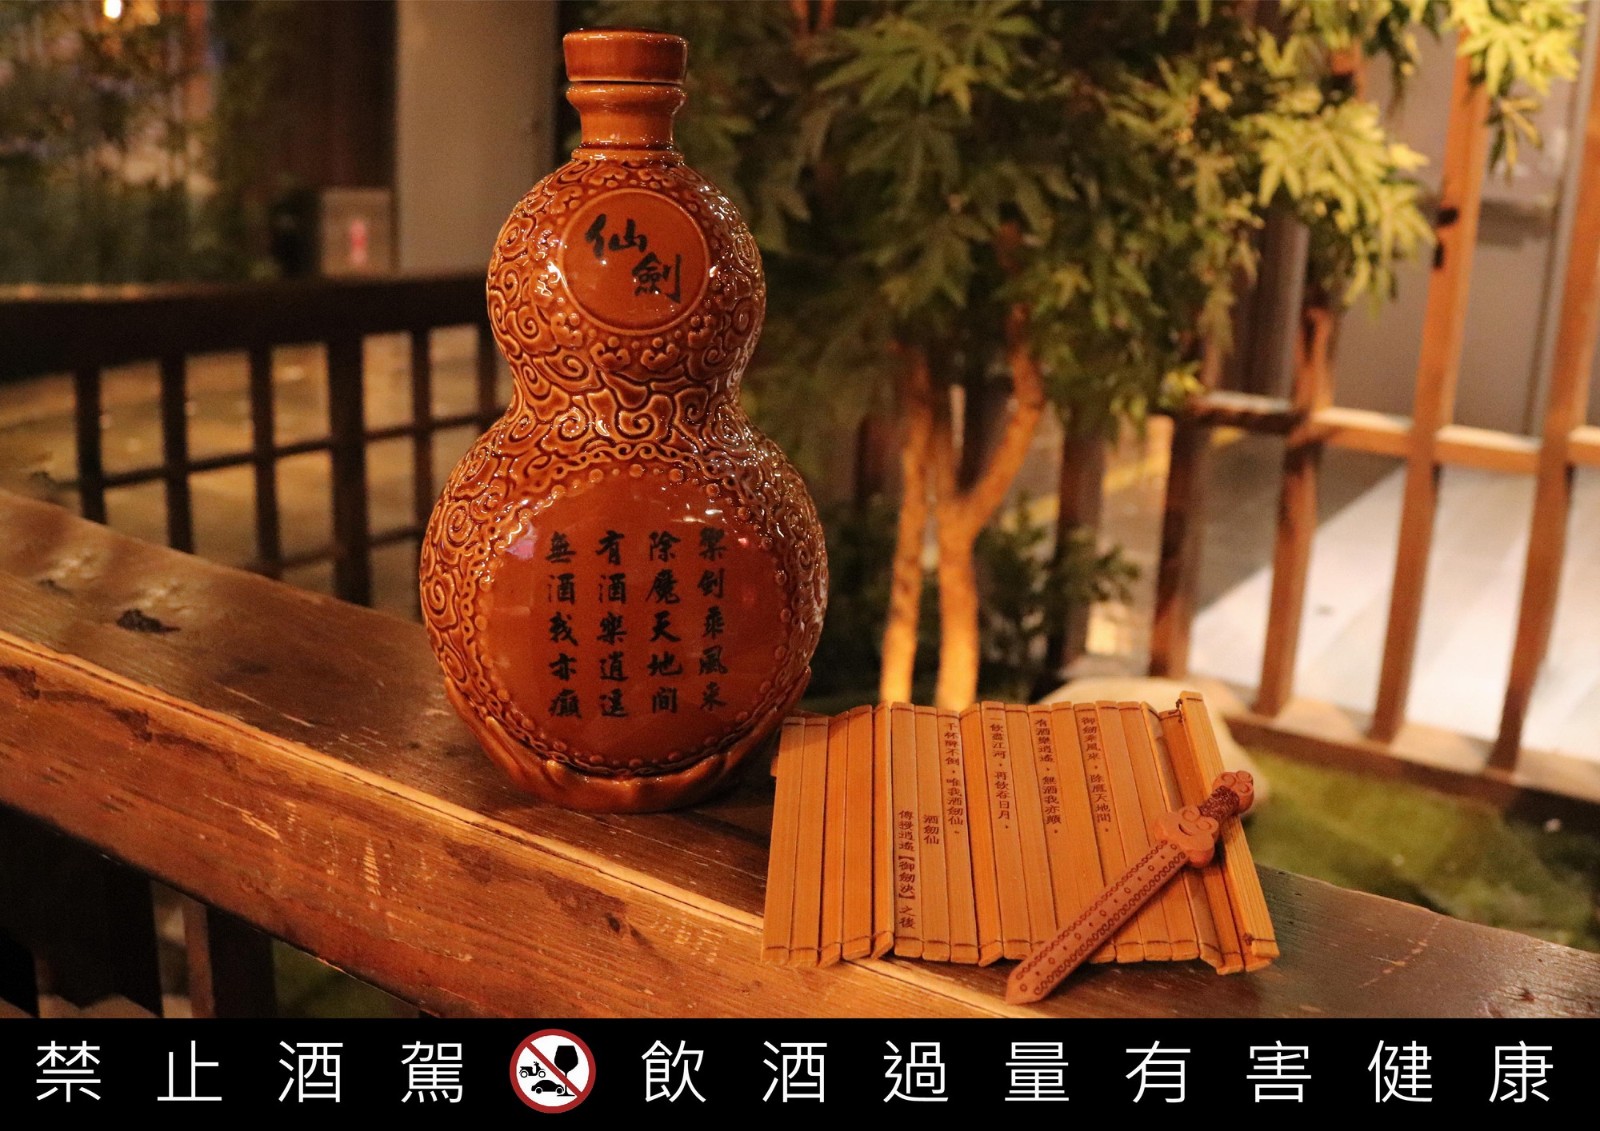 《仙劍》推出限量版葫蘆造型紀念酒 你值得擁有